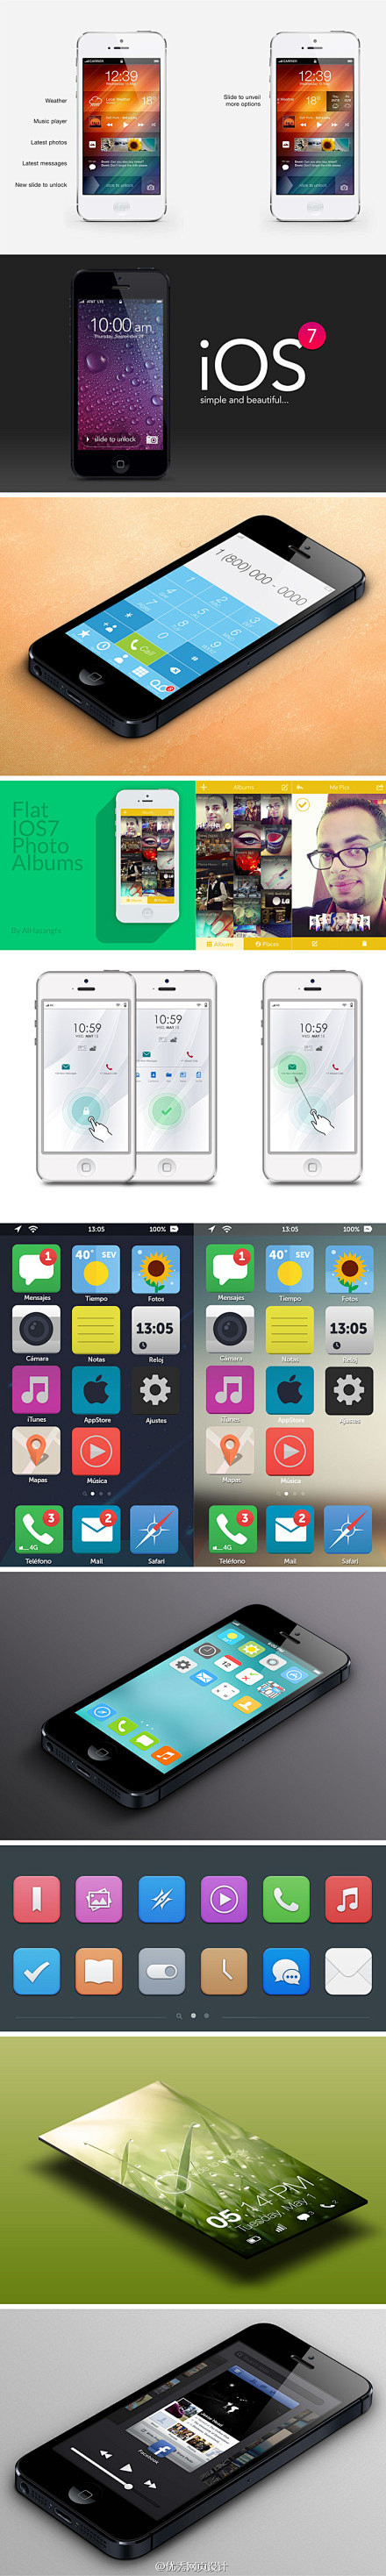 iOS7 concept